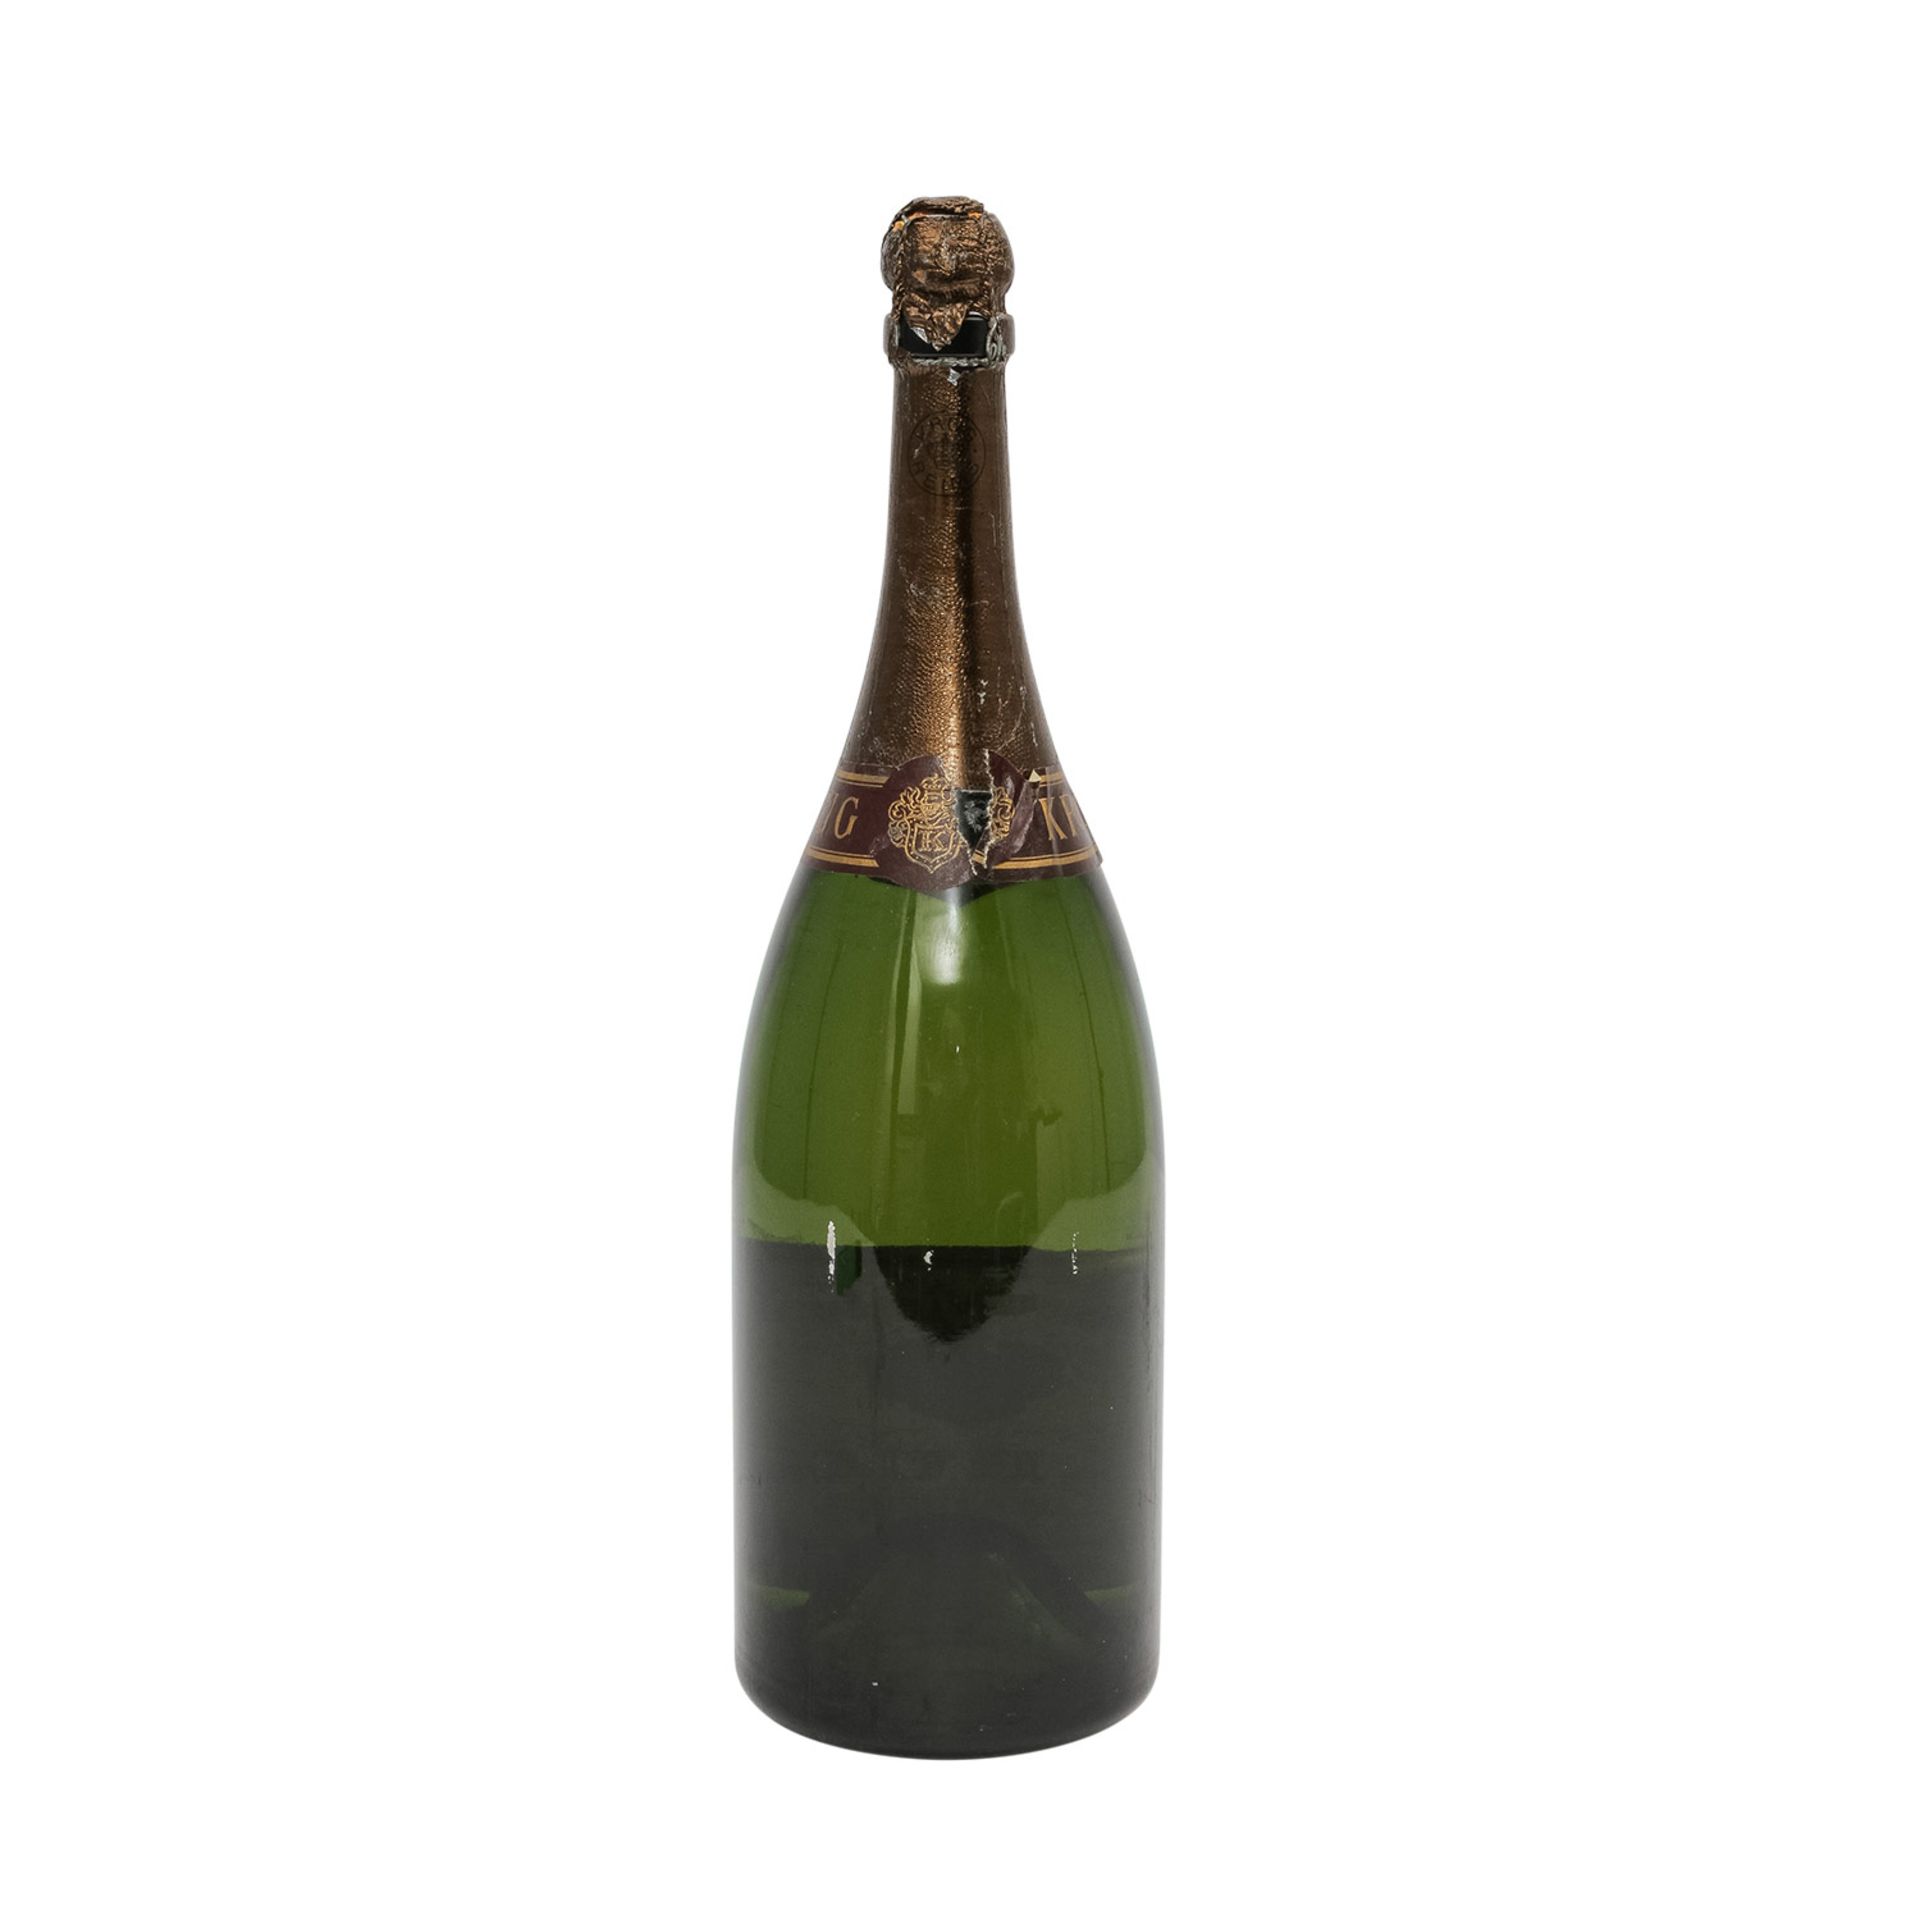 KRUG Champagne Brut, Magnumflasche, Vintage 1973Reims, Frankreich, Rebsorte: Champagne Blend, 12, - Image 2 of 6